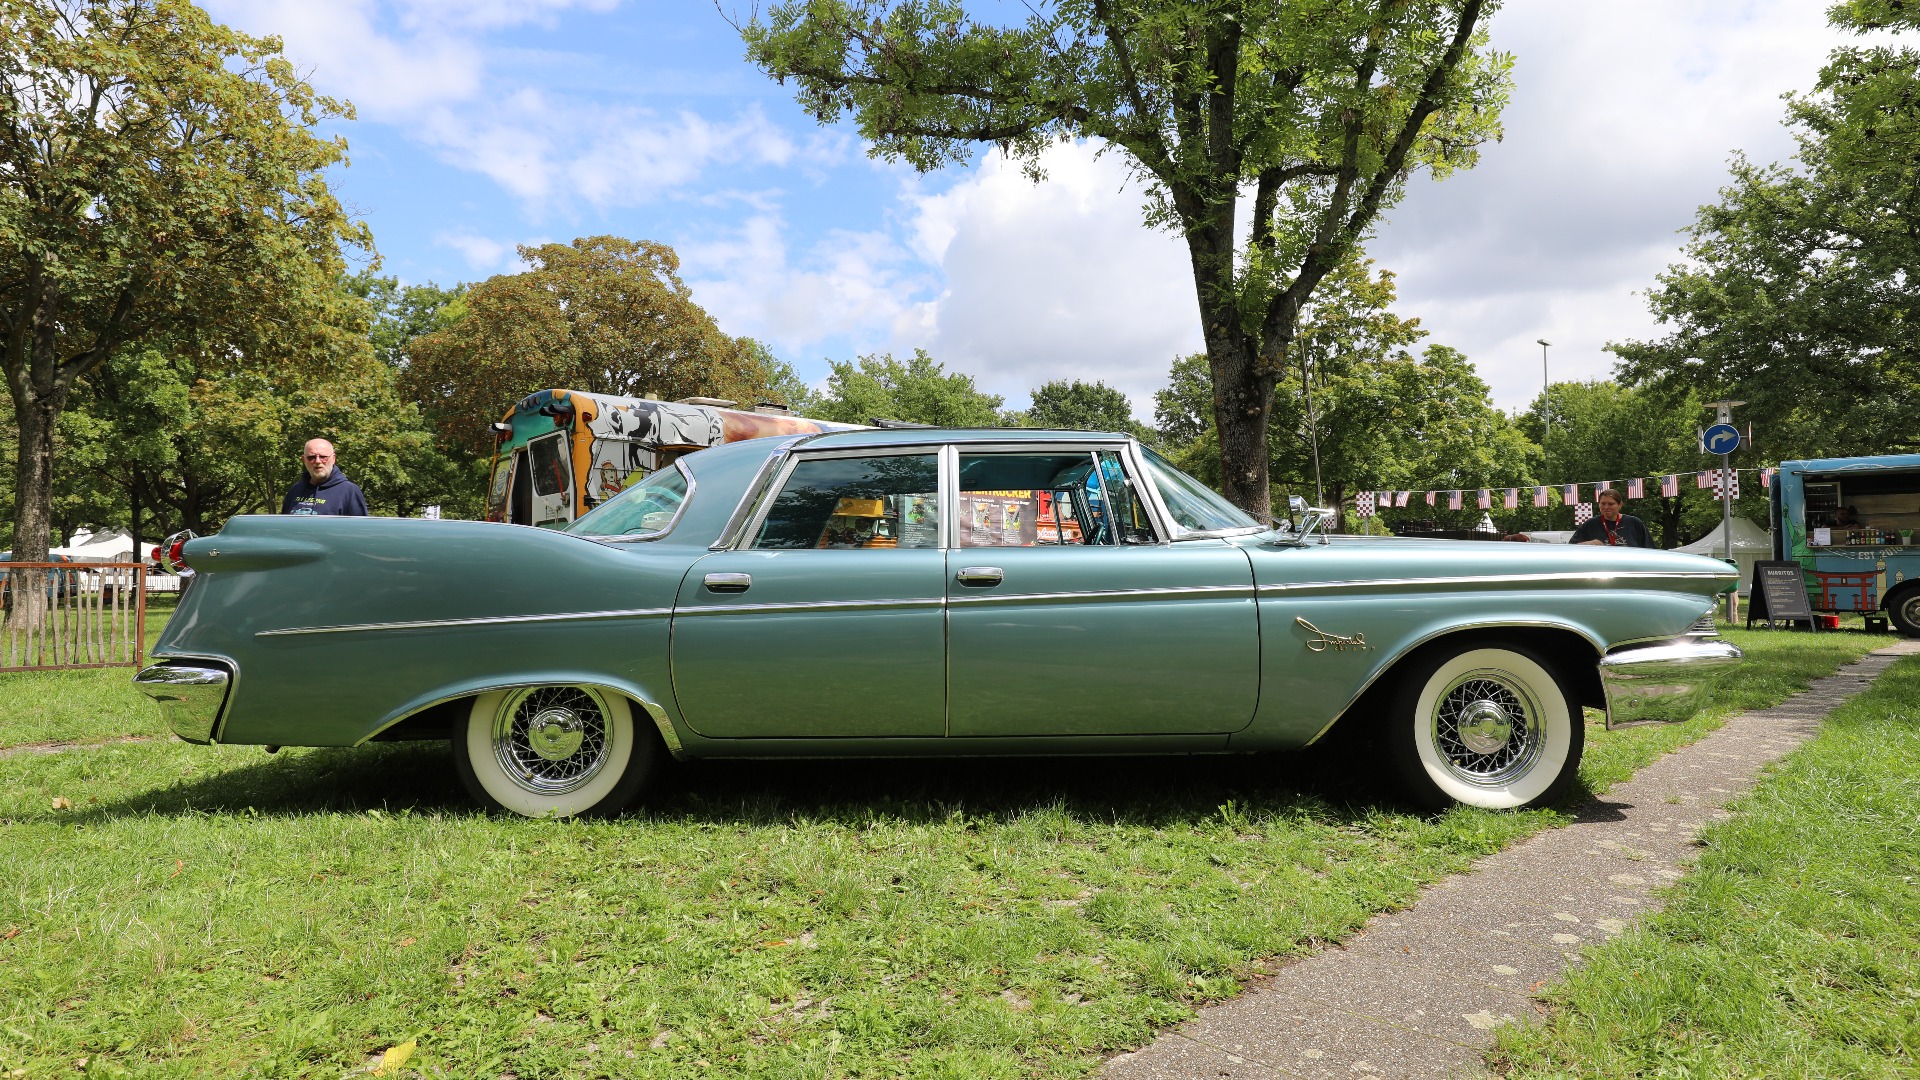 1960 Imperial Crown er amerikansk bilindustri på sitt aller flotteste.